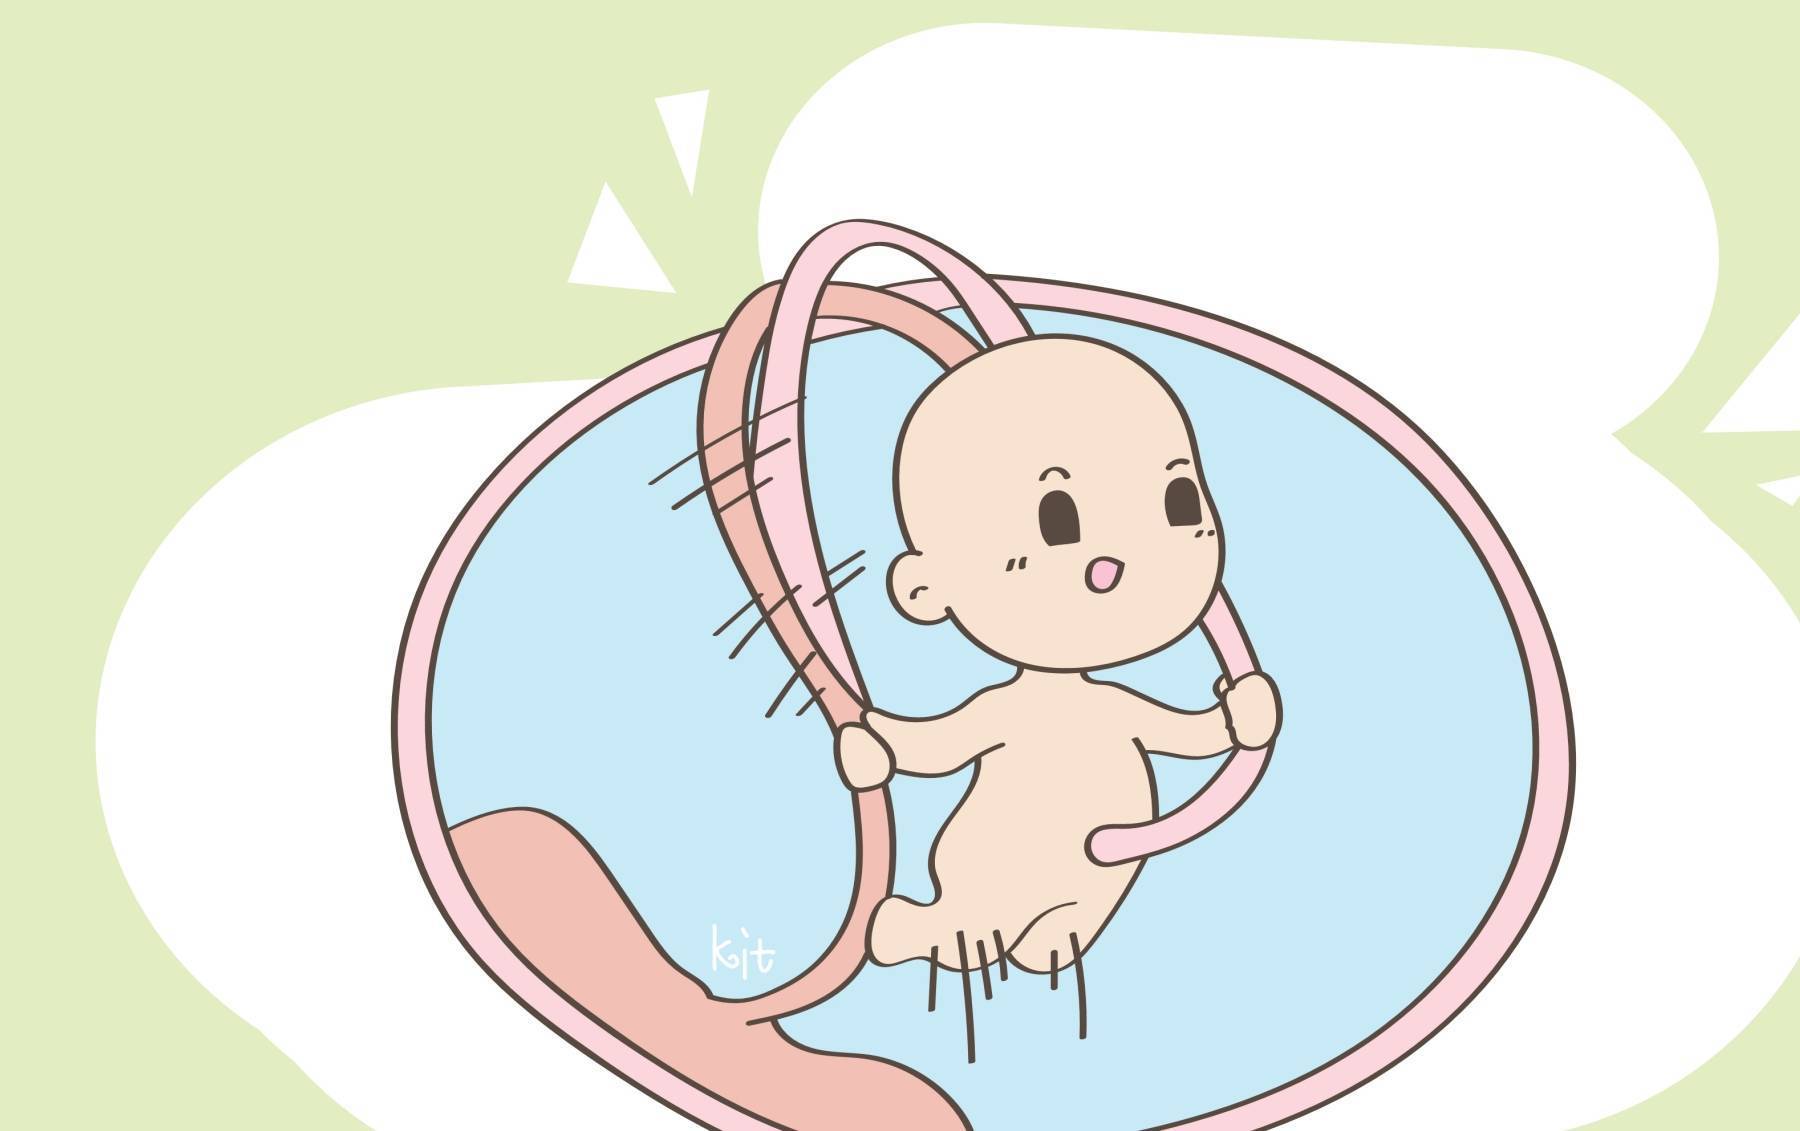 胎儿绕颈图片